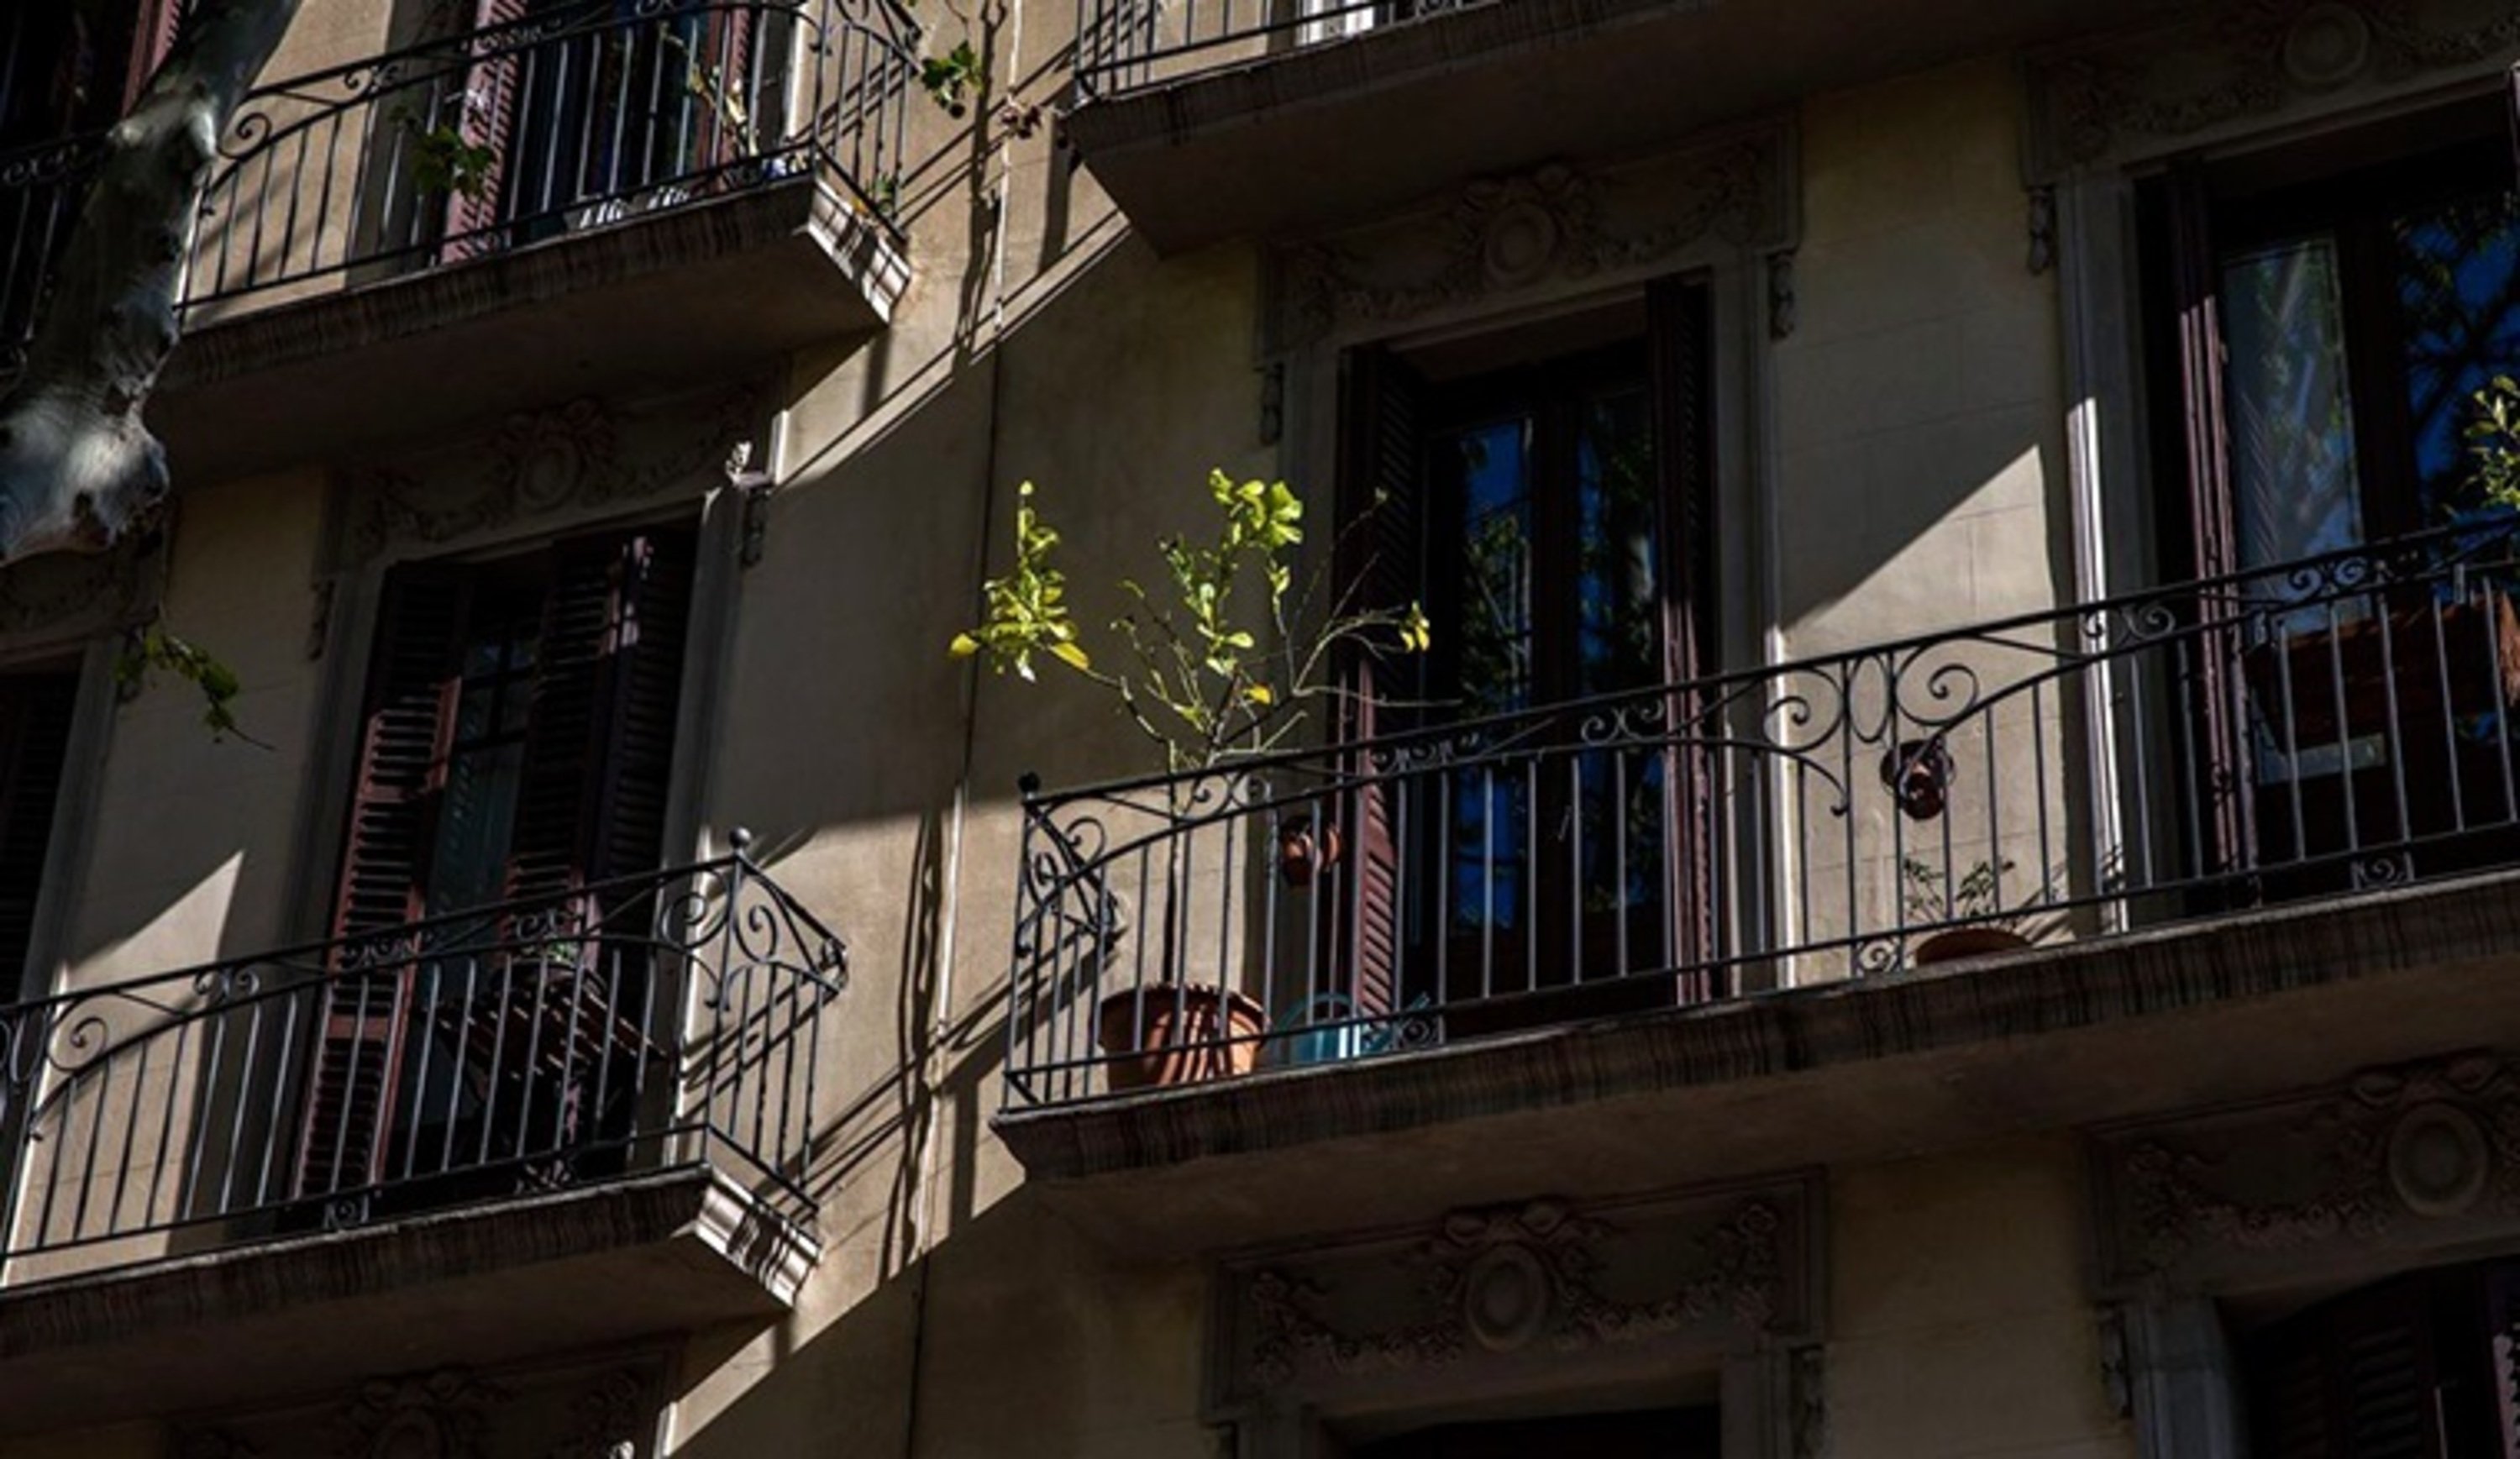 Un regidor dels comuns desmenteix la notícia 'fake' dels 1.600 empadronats a un pis de Barcelona